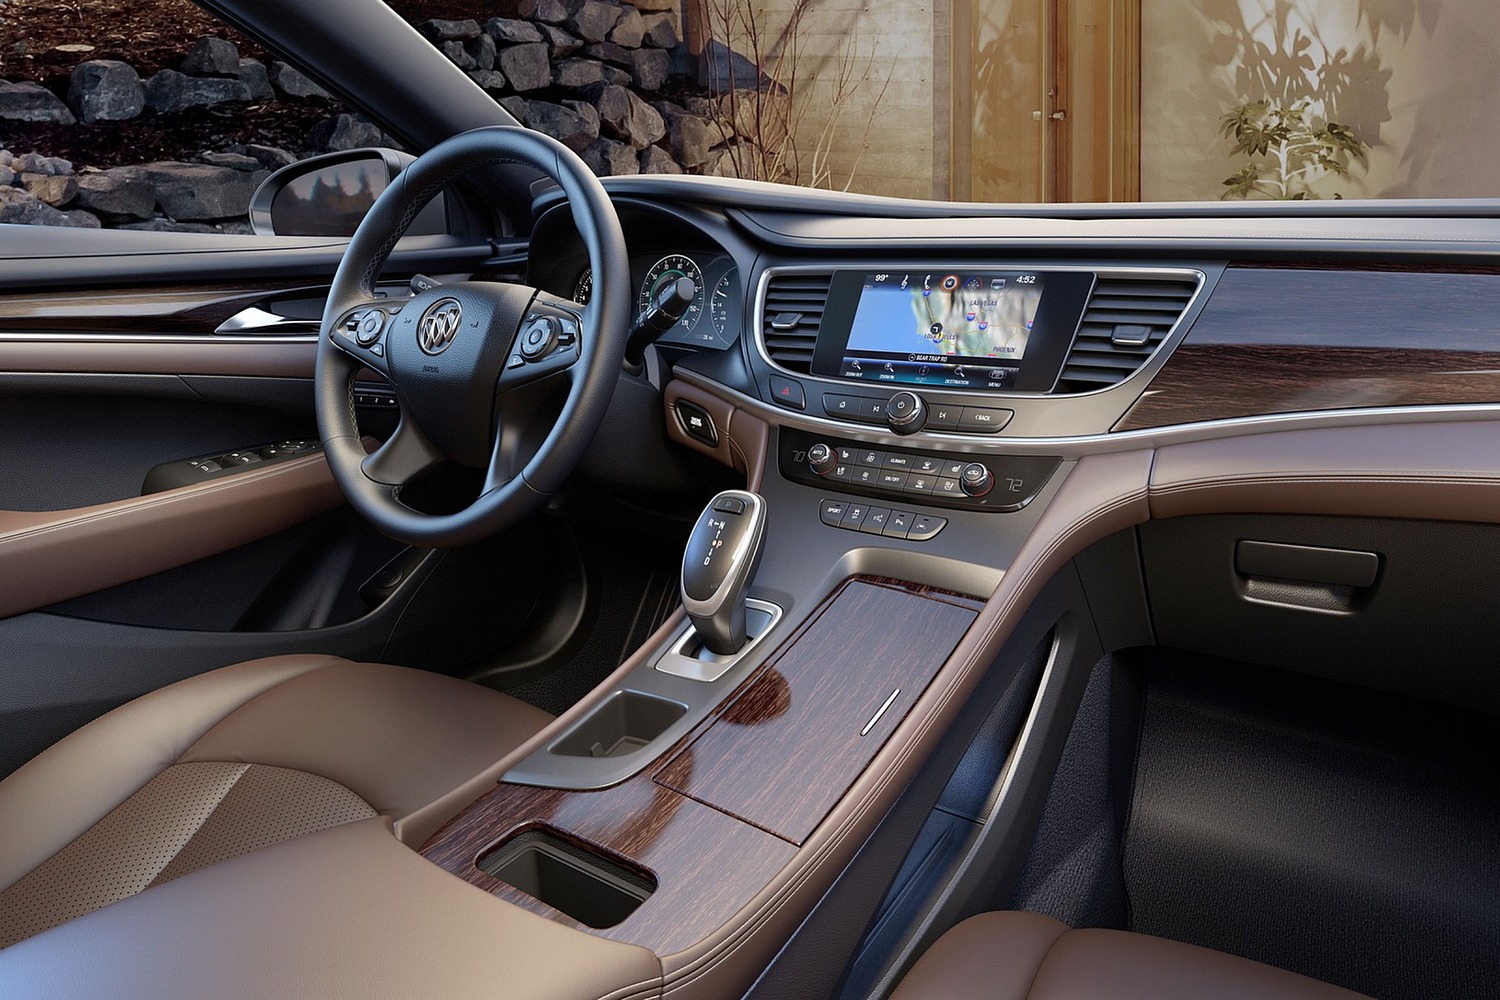 Buick LaCrosse Premium Sedan Interior (2017 model year shown)